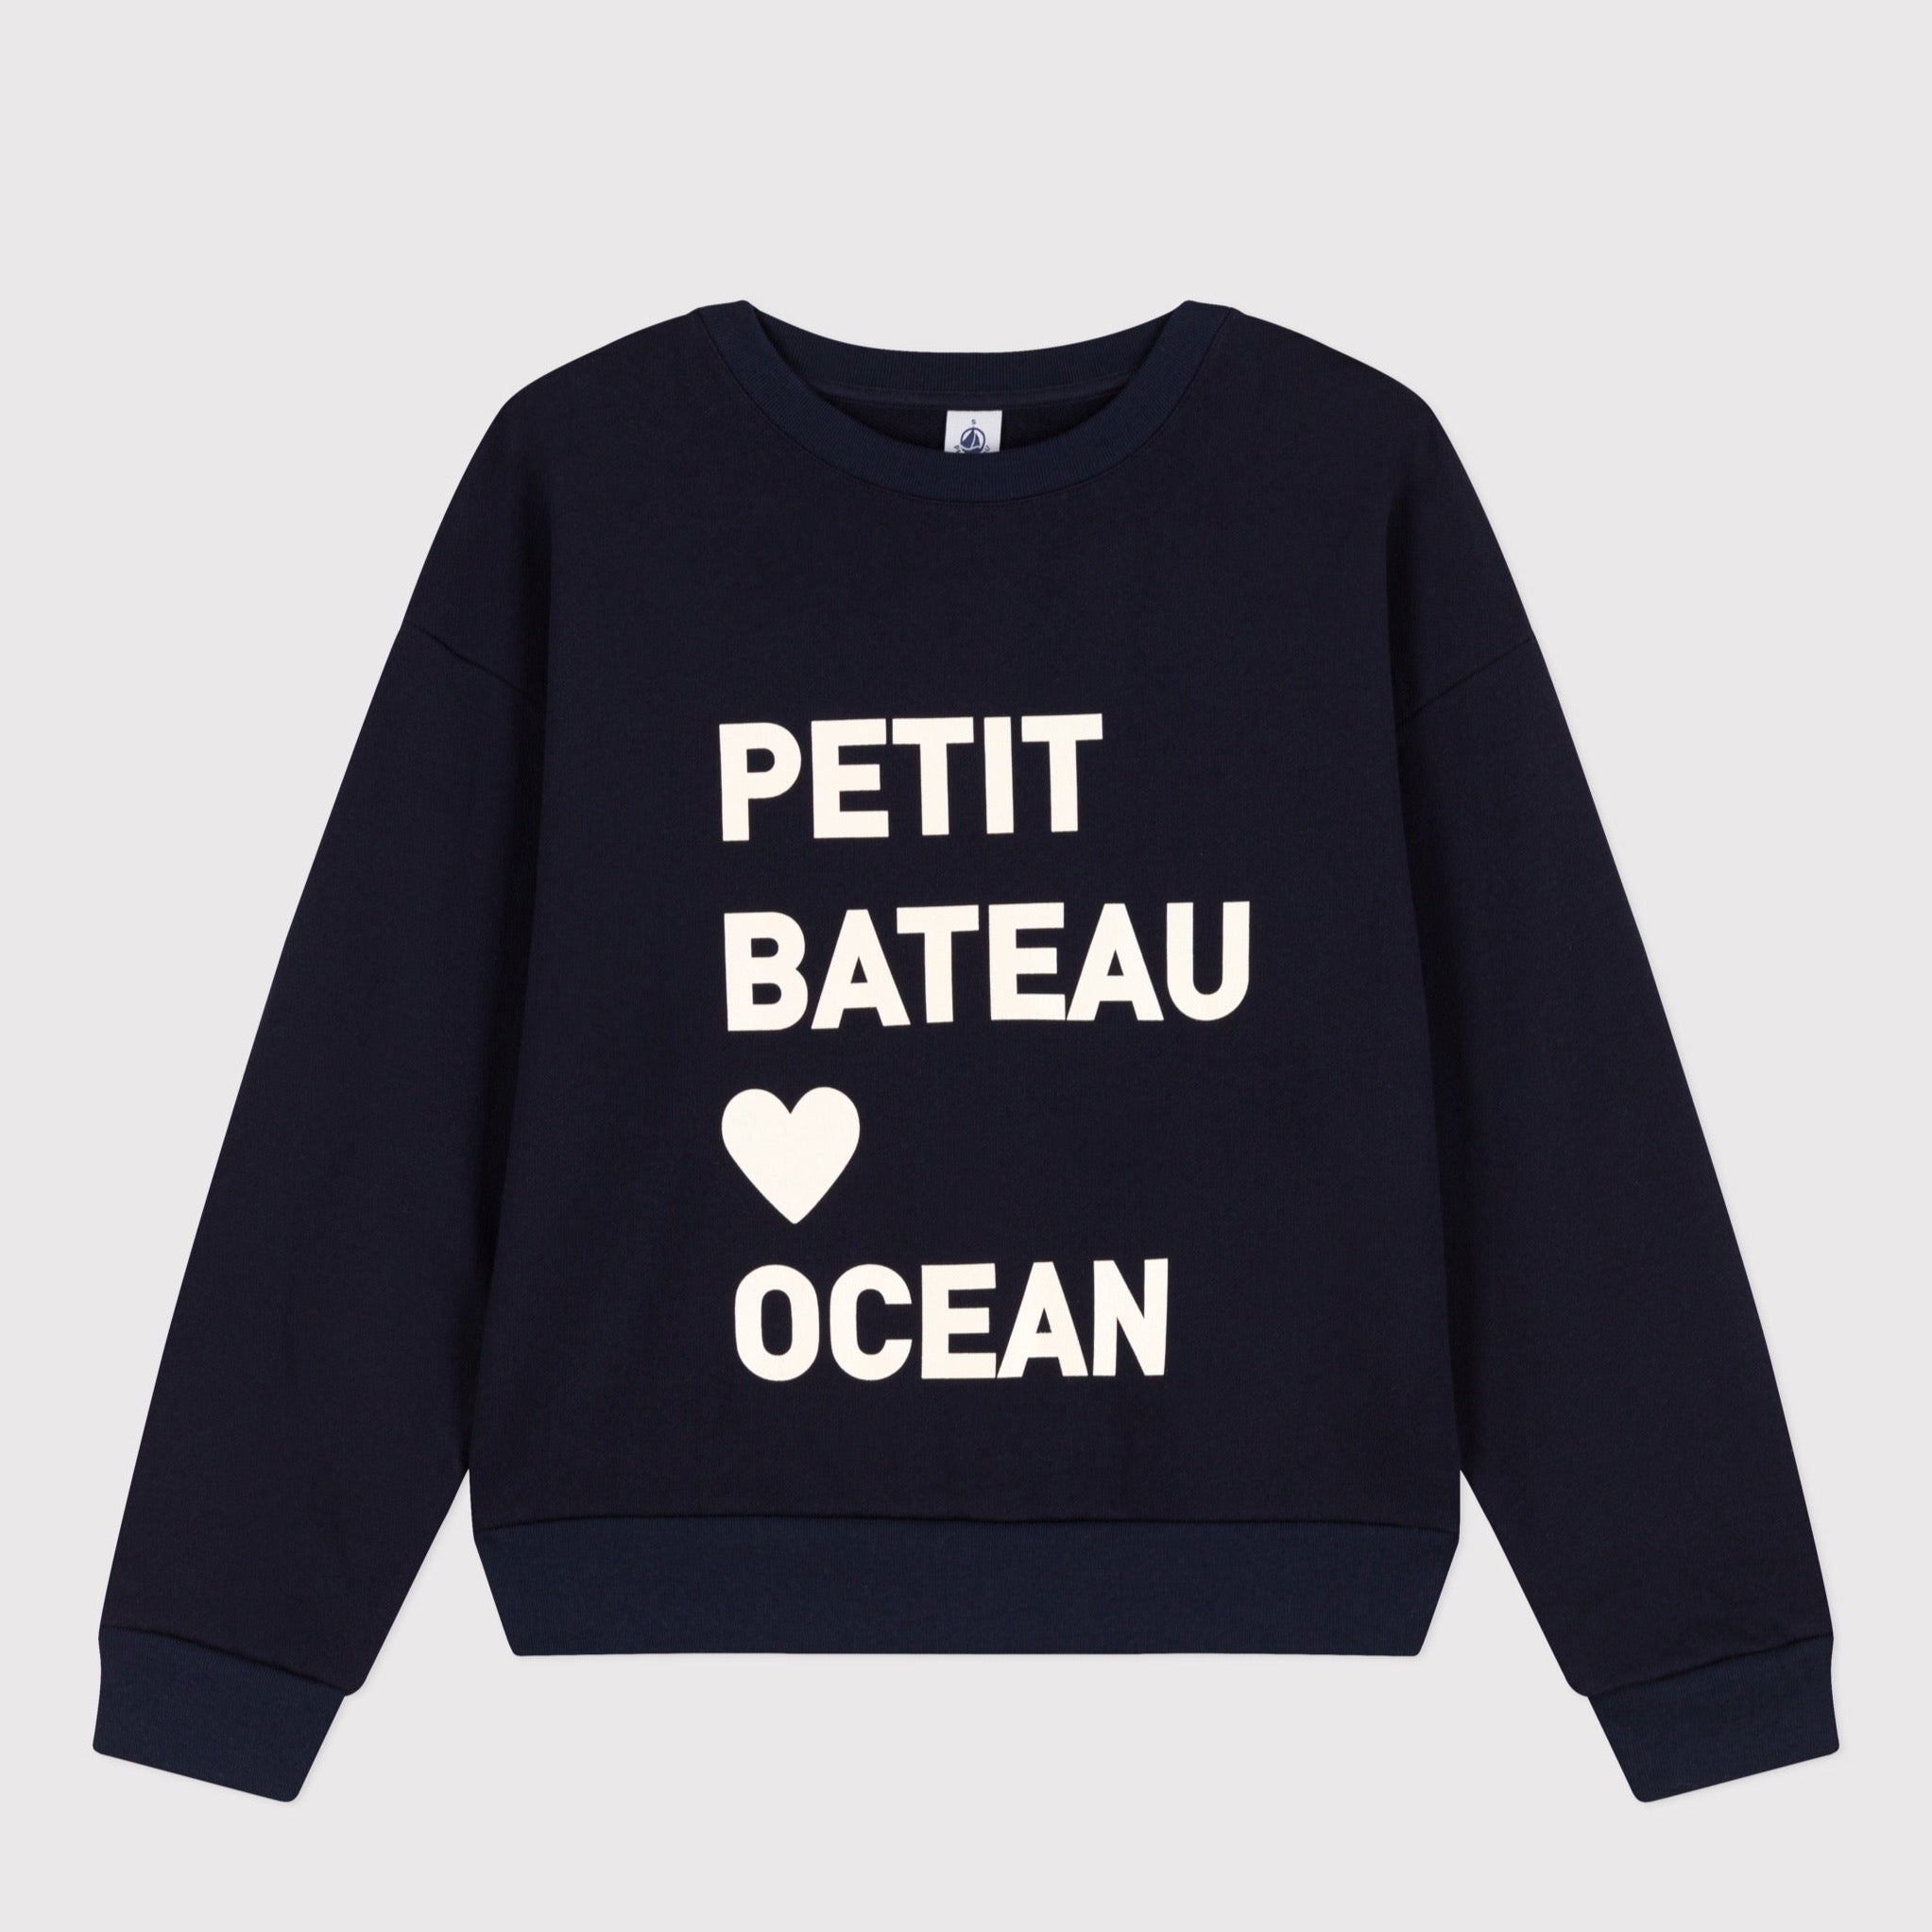 Petit Bateau - Sweater met ronde hals in katoen - 1 & 3 jaar